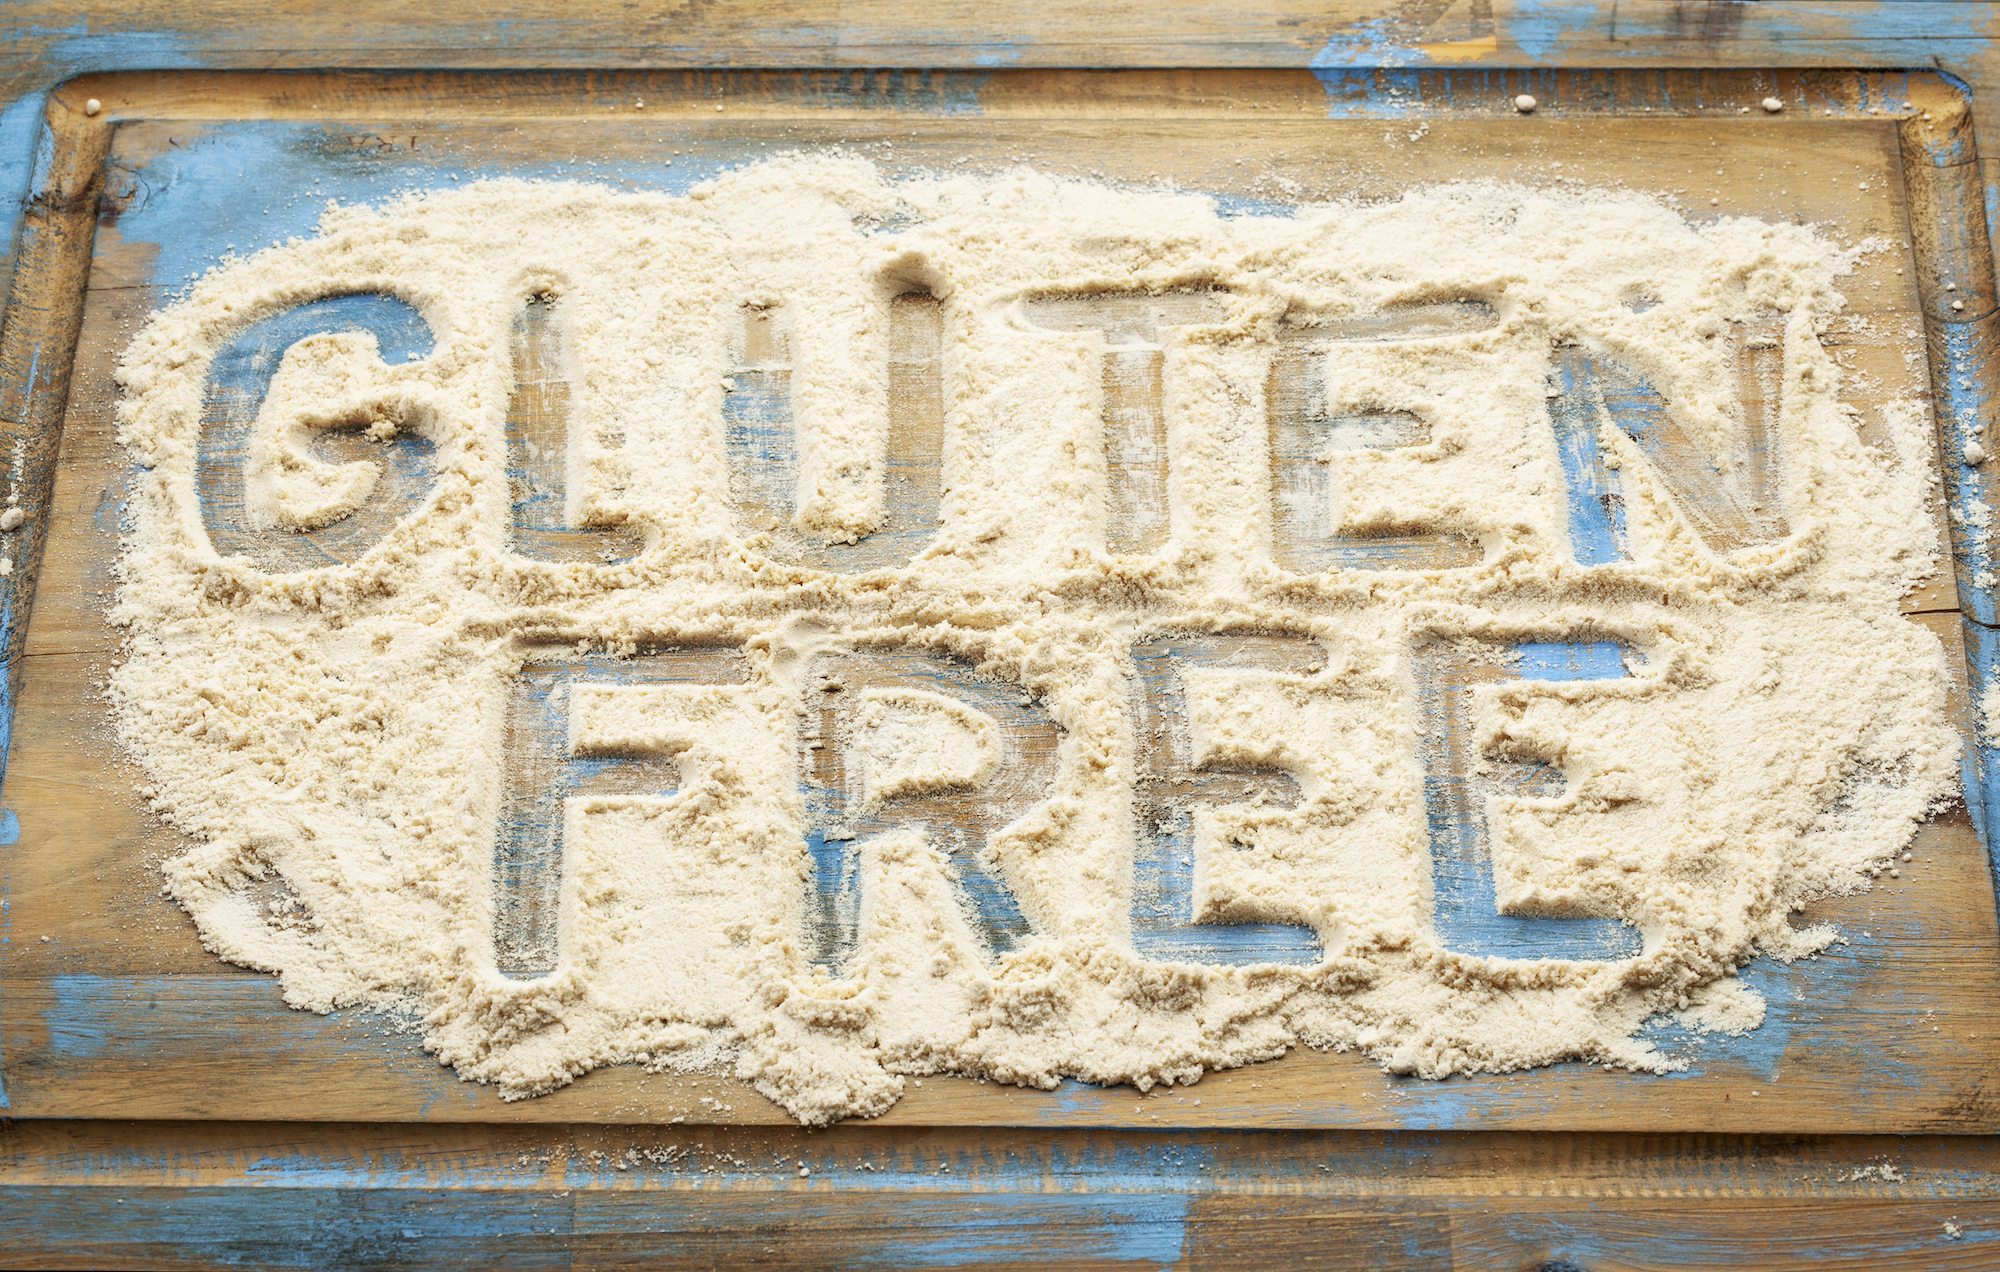 Gluten-Free Road Trip Ideas